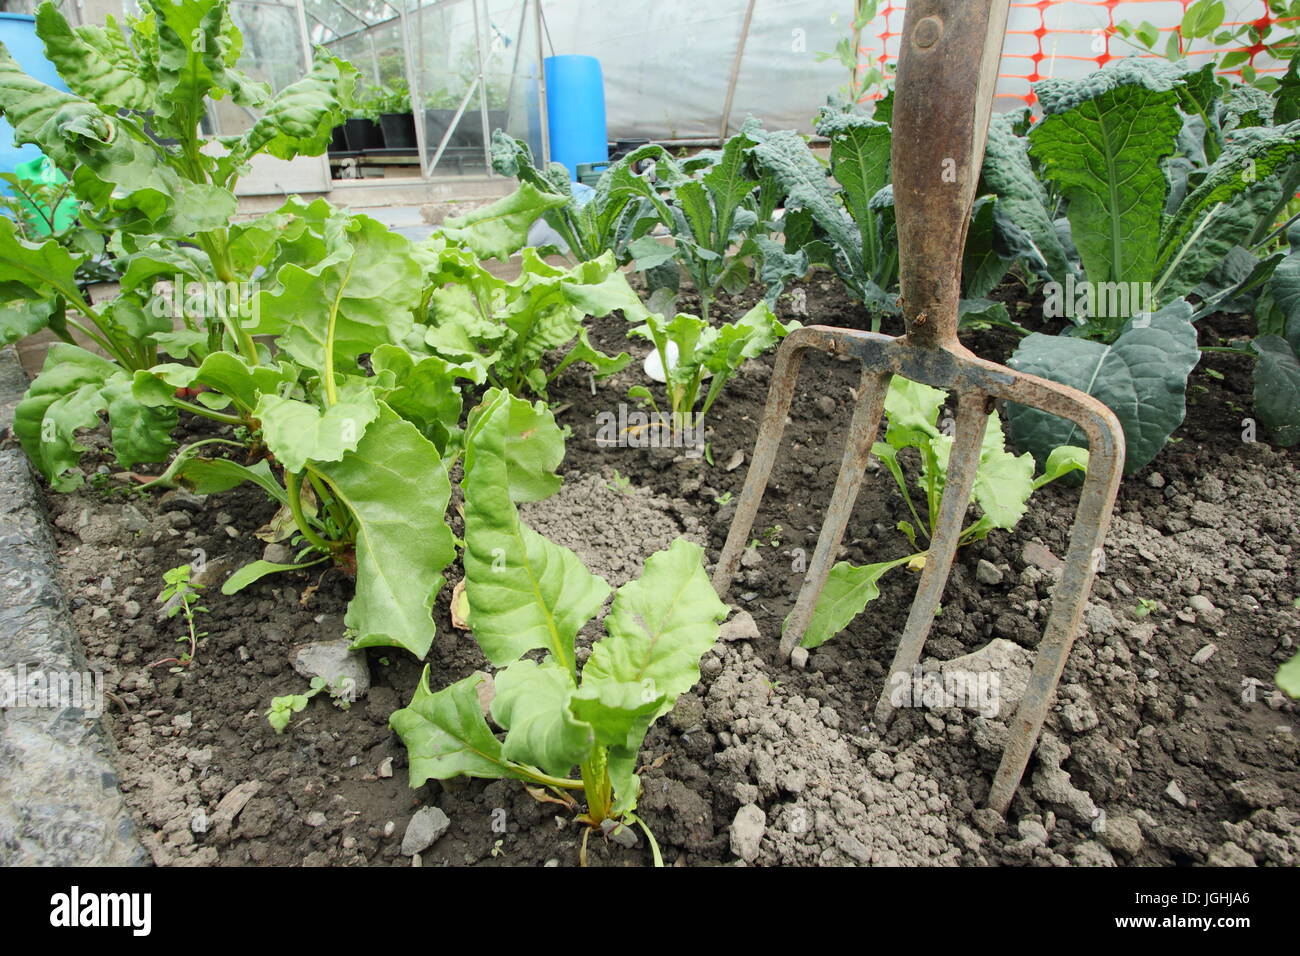 Les jeunes betteraves et brassica croissant dans une parcelle de terrain végétale dans un jardin au milieu de l'été à l'allotissement Banque D'Images